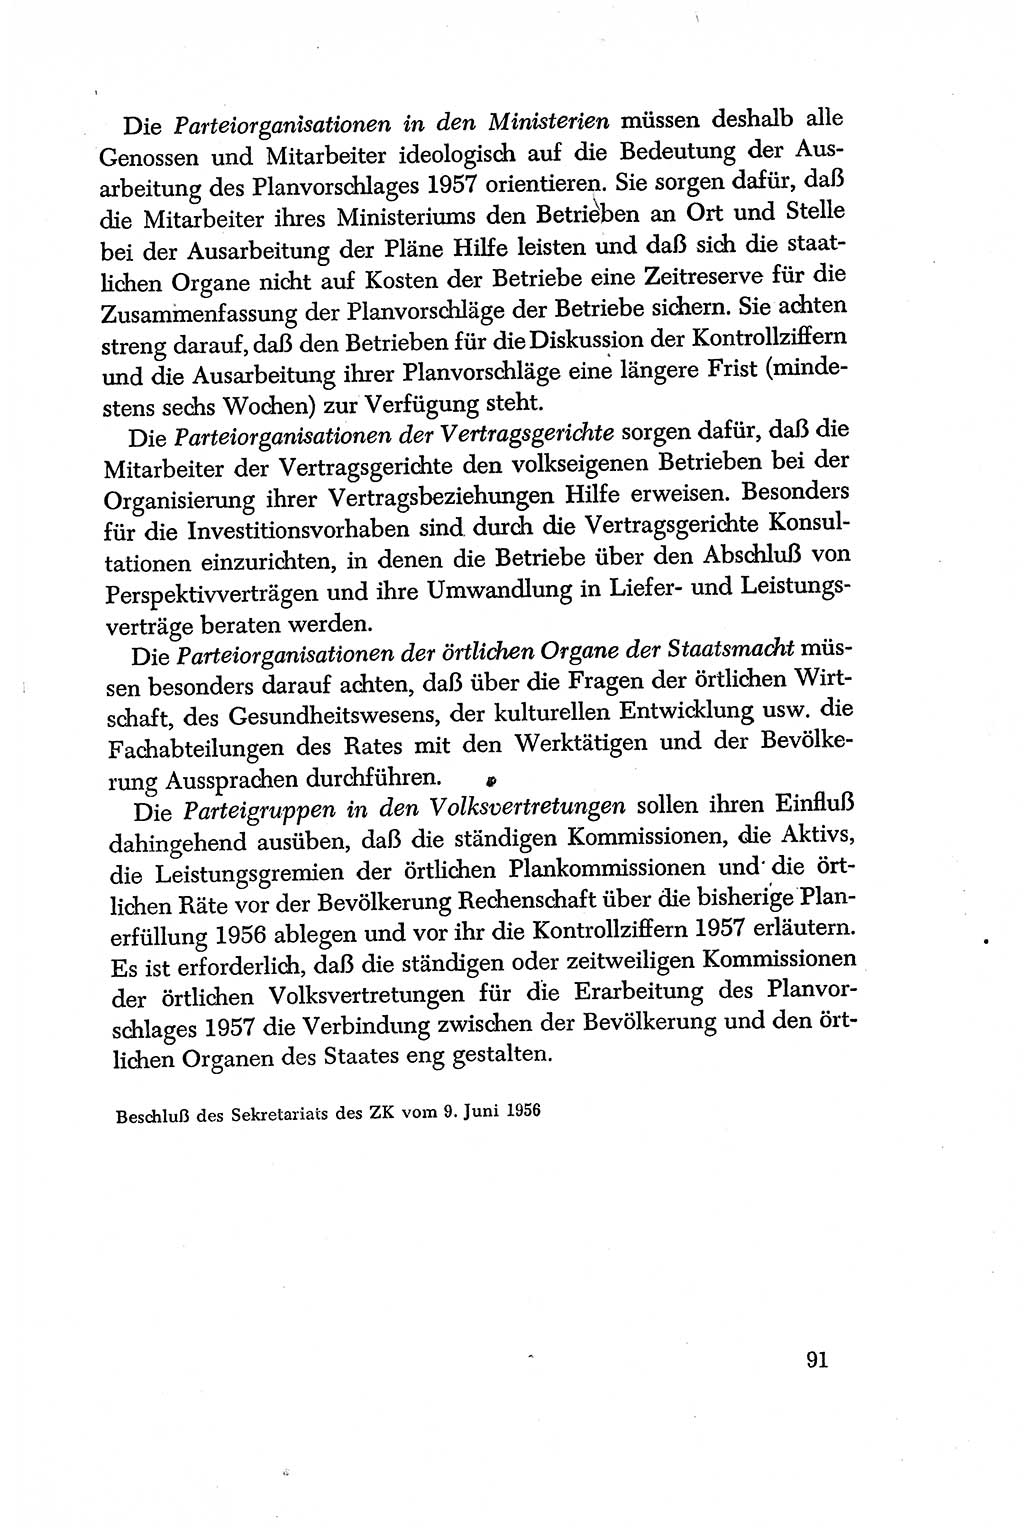 Dokumente der Sozialistischen Einheitspartei Deutschlands (SED) [Deutsche Demokratische Republik (DDR)] 1956-1957, Seite 91 (Dok. SED DDR 1956-1957, S. 91)